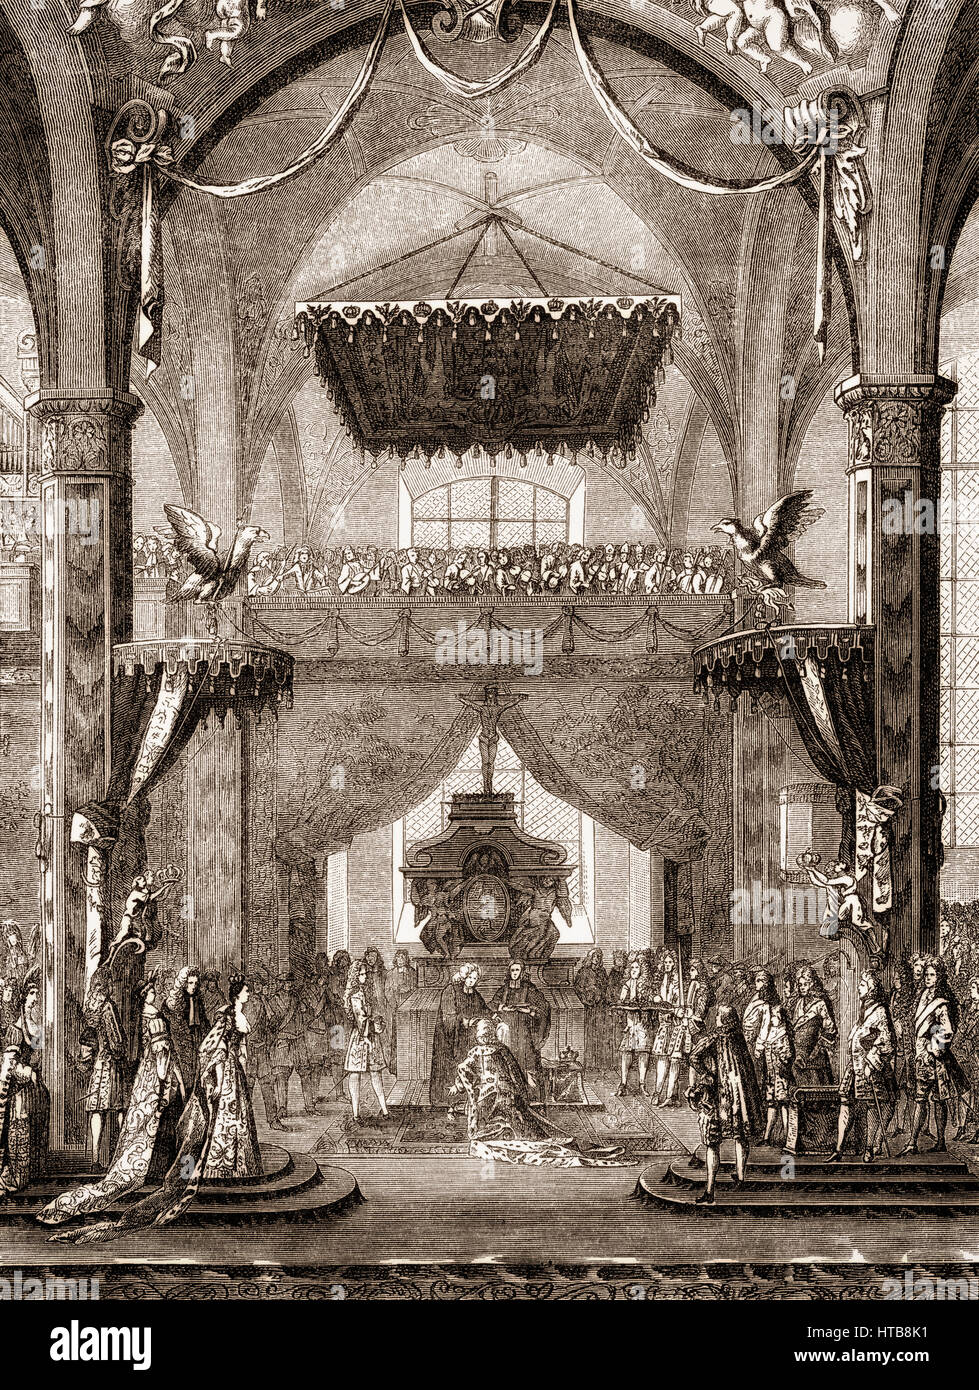 Le Couronnement de Frédéric I, 1657 - 1713, le premier roi de Prusse Frédéric III, Électeur de Brandebourg, 18 janvier 1701, Königsberg Banque D'Images